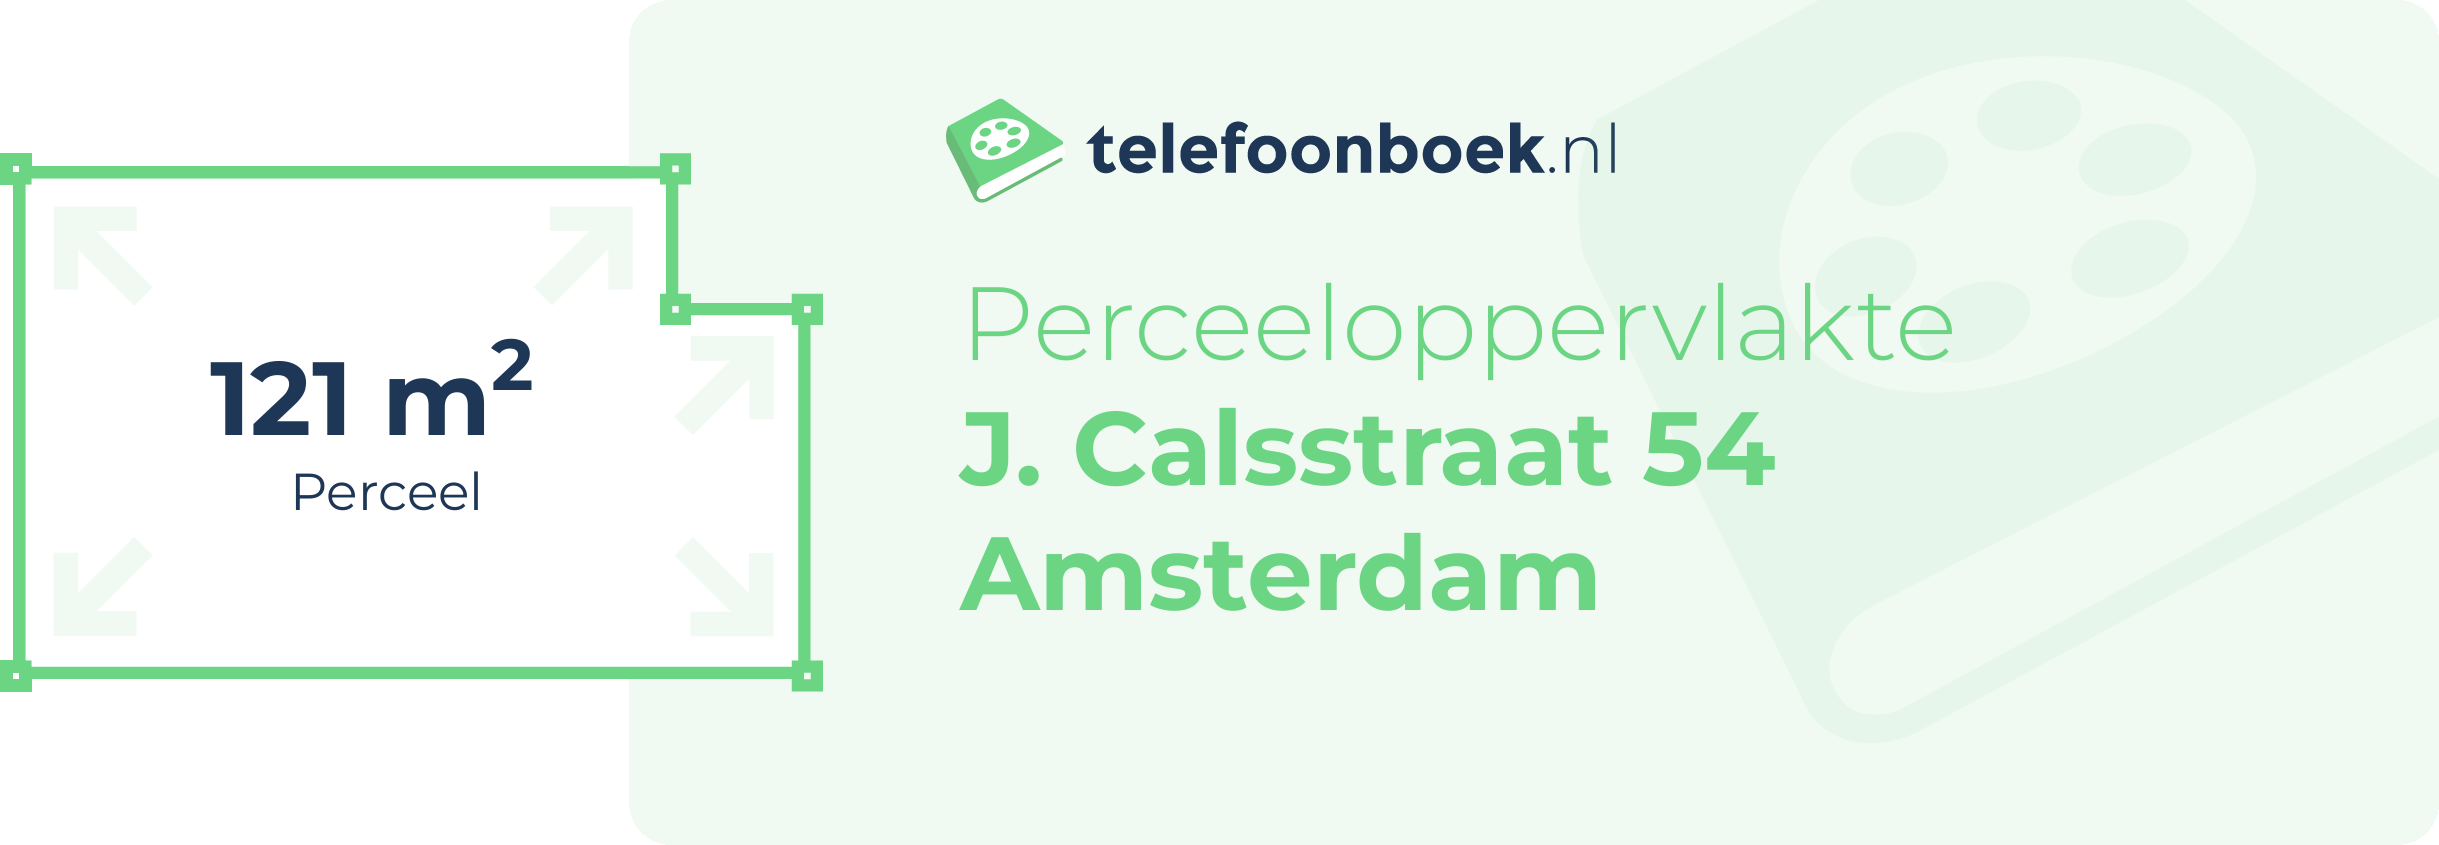 Perceeloppervlakte J. Calsstraat 54 Amsterdam